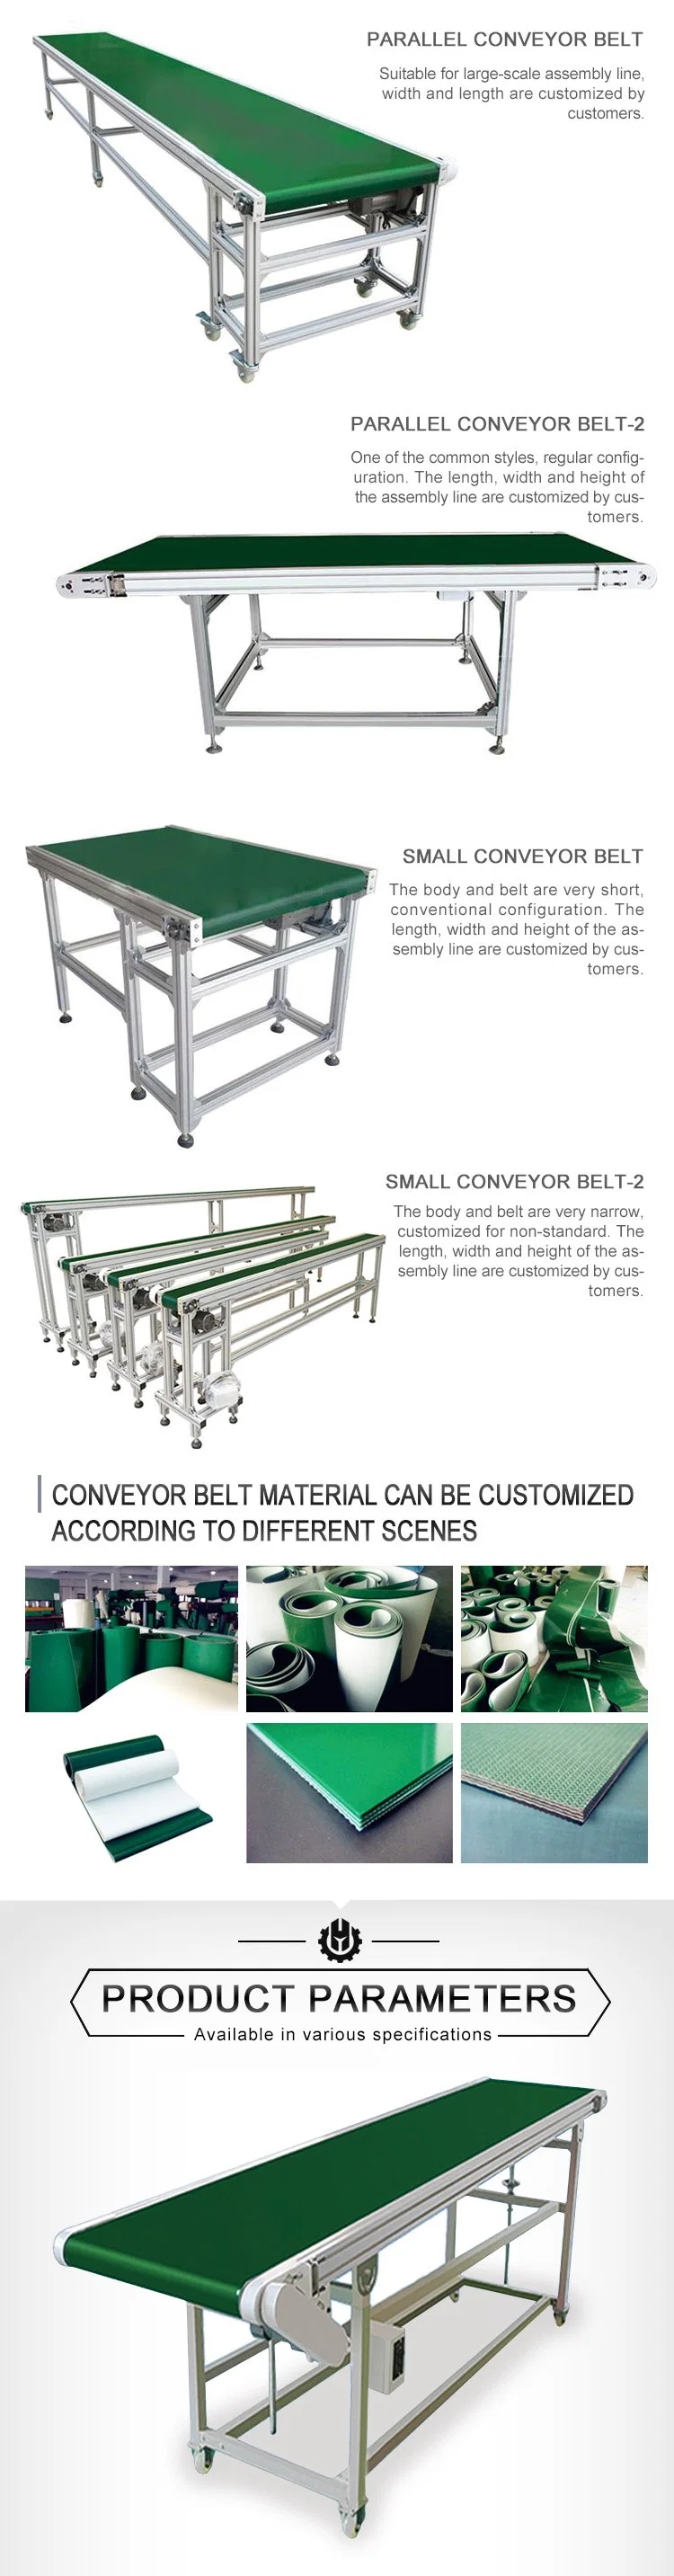 Large Conveyor Belt B500 Flat Power PU Belt Conveyor